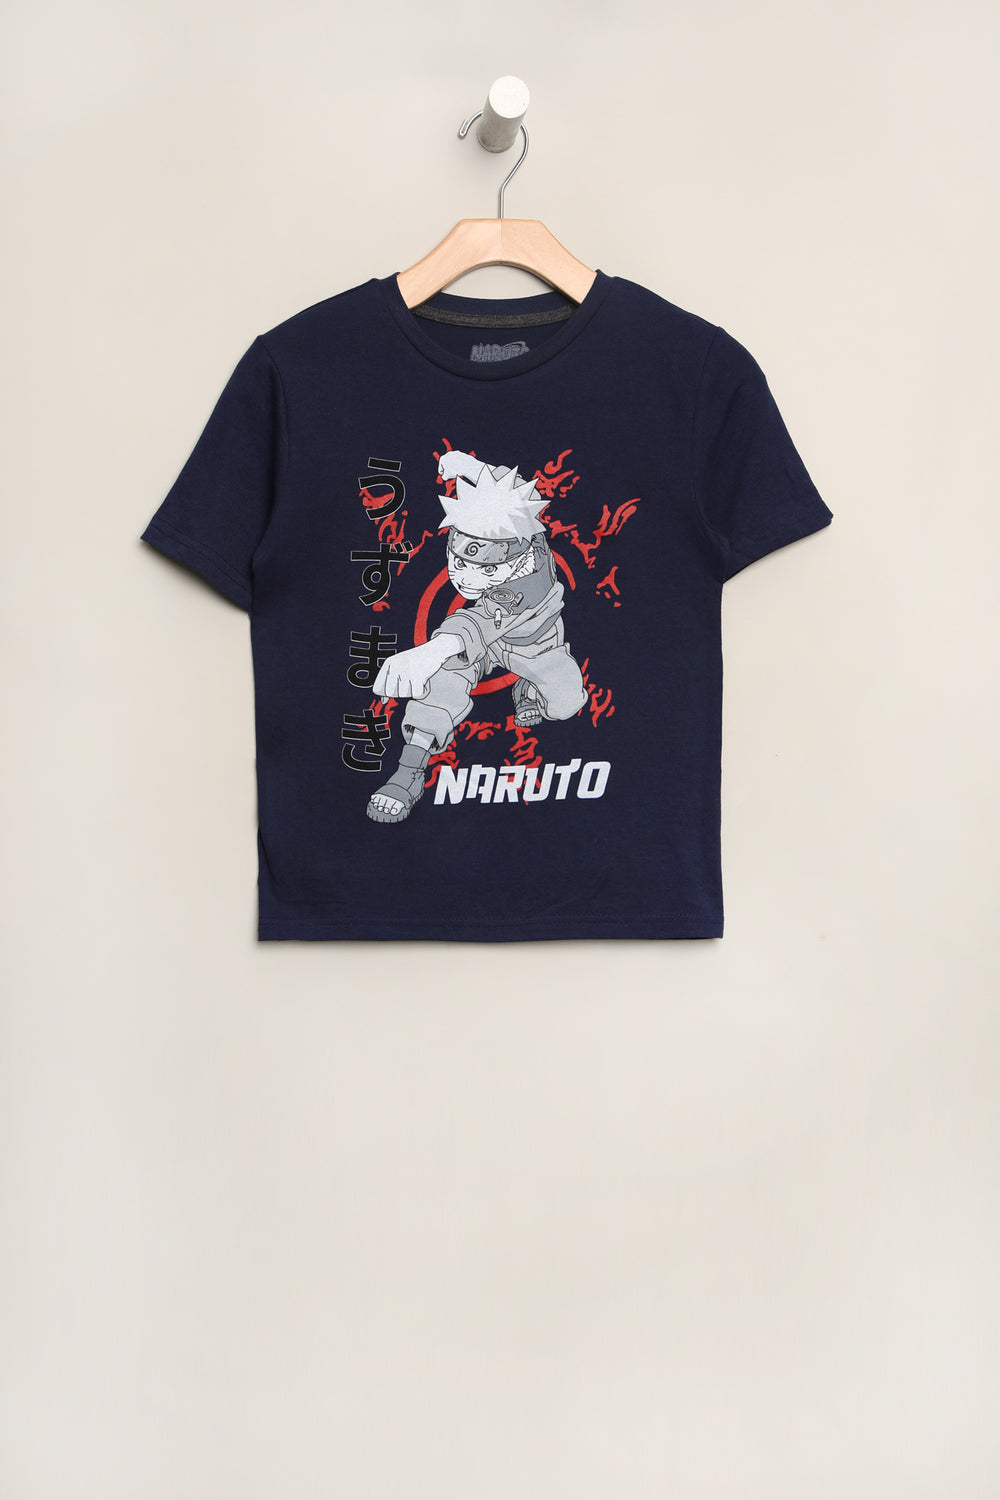 Youth Naruto T-Shirt Youth Naruto T-Shirt